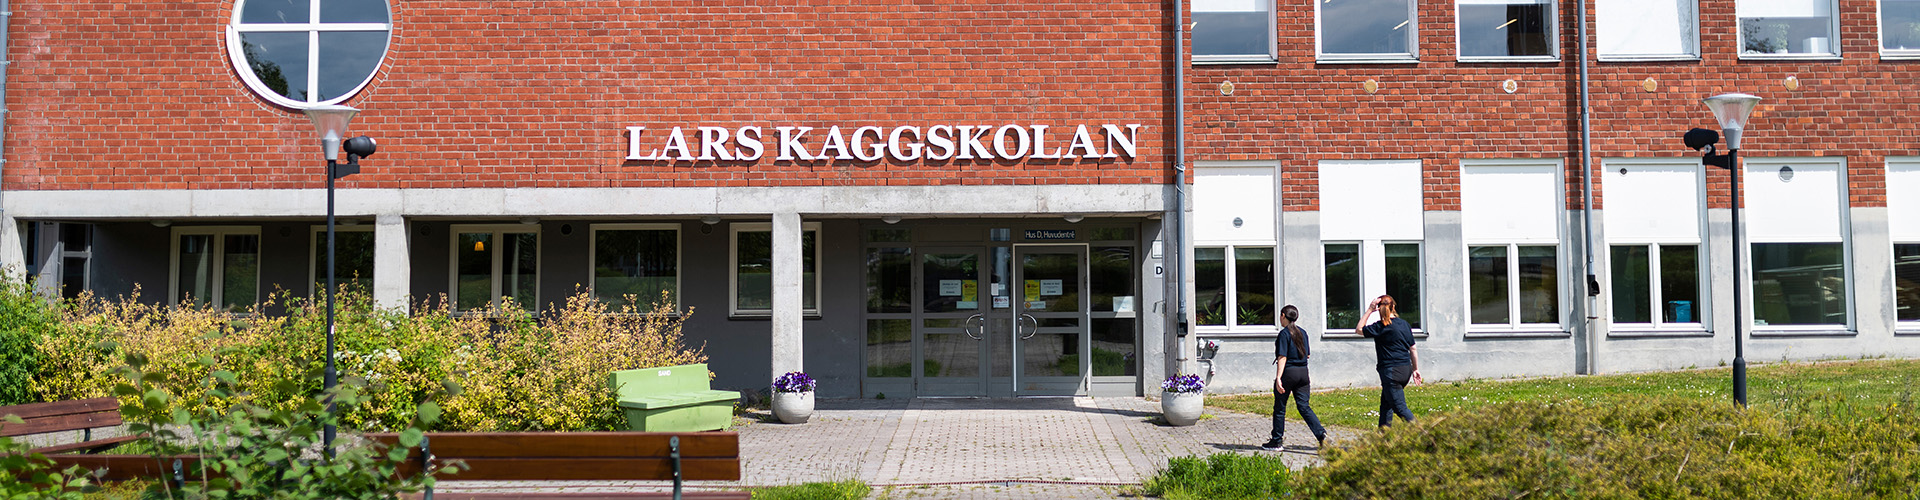 Exteriörbild på Lars Kaggskolans entré.